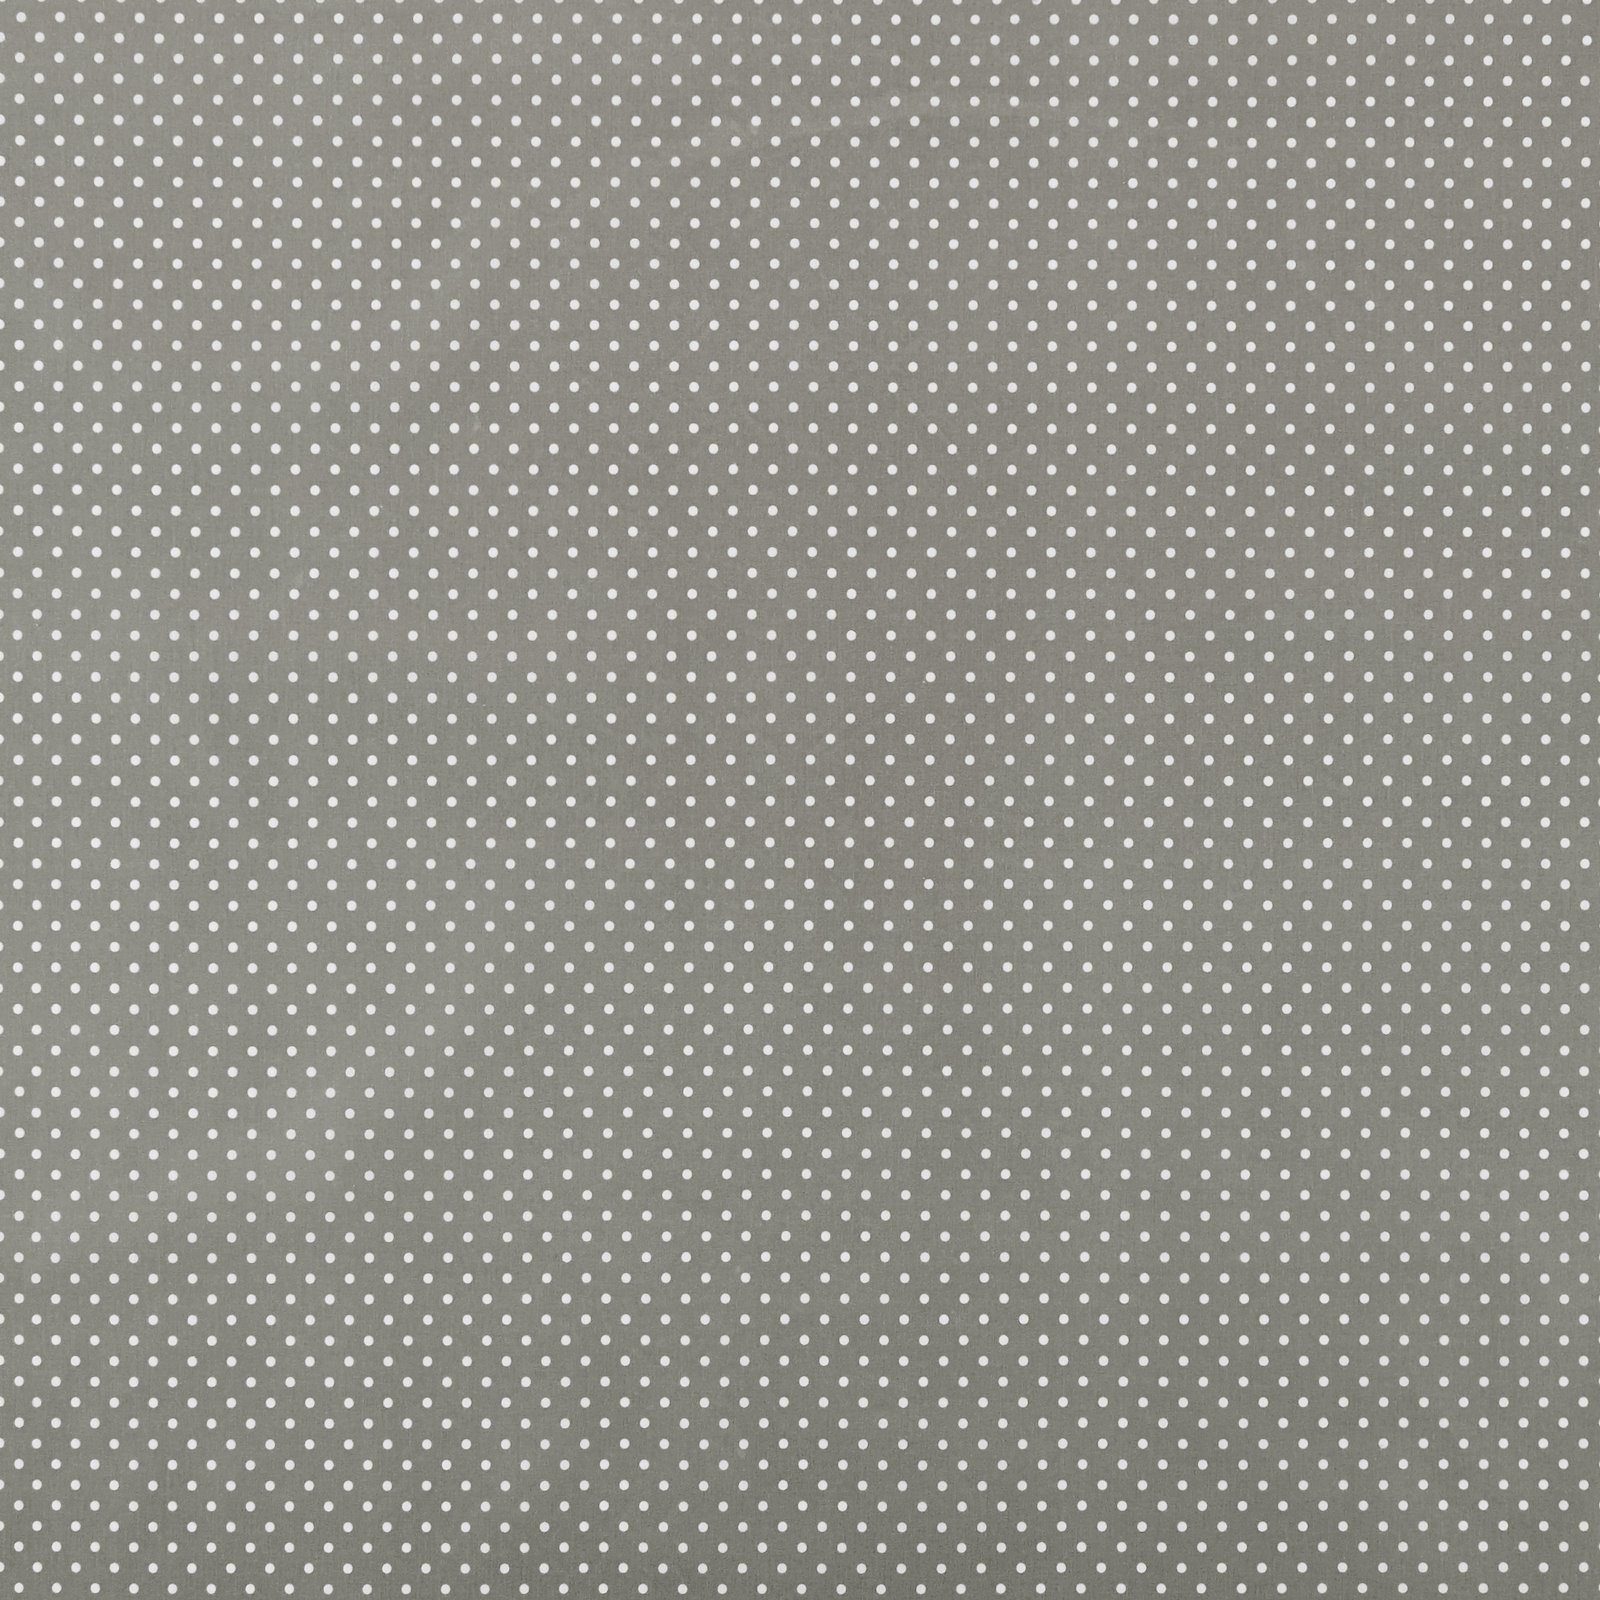 Tekstilvoksdug grå m hvide prikker 860485_pack_sp